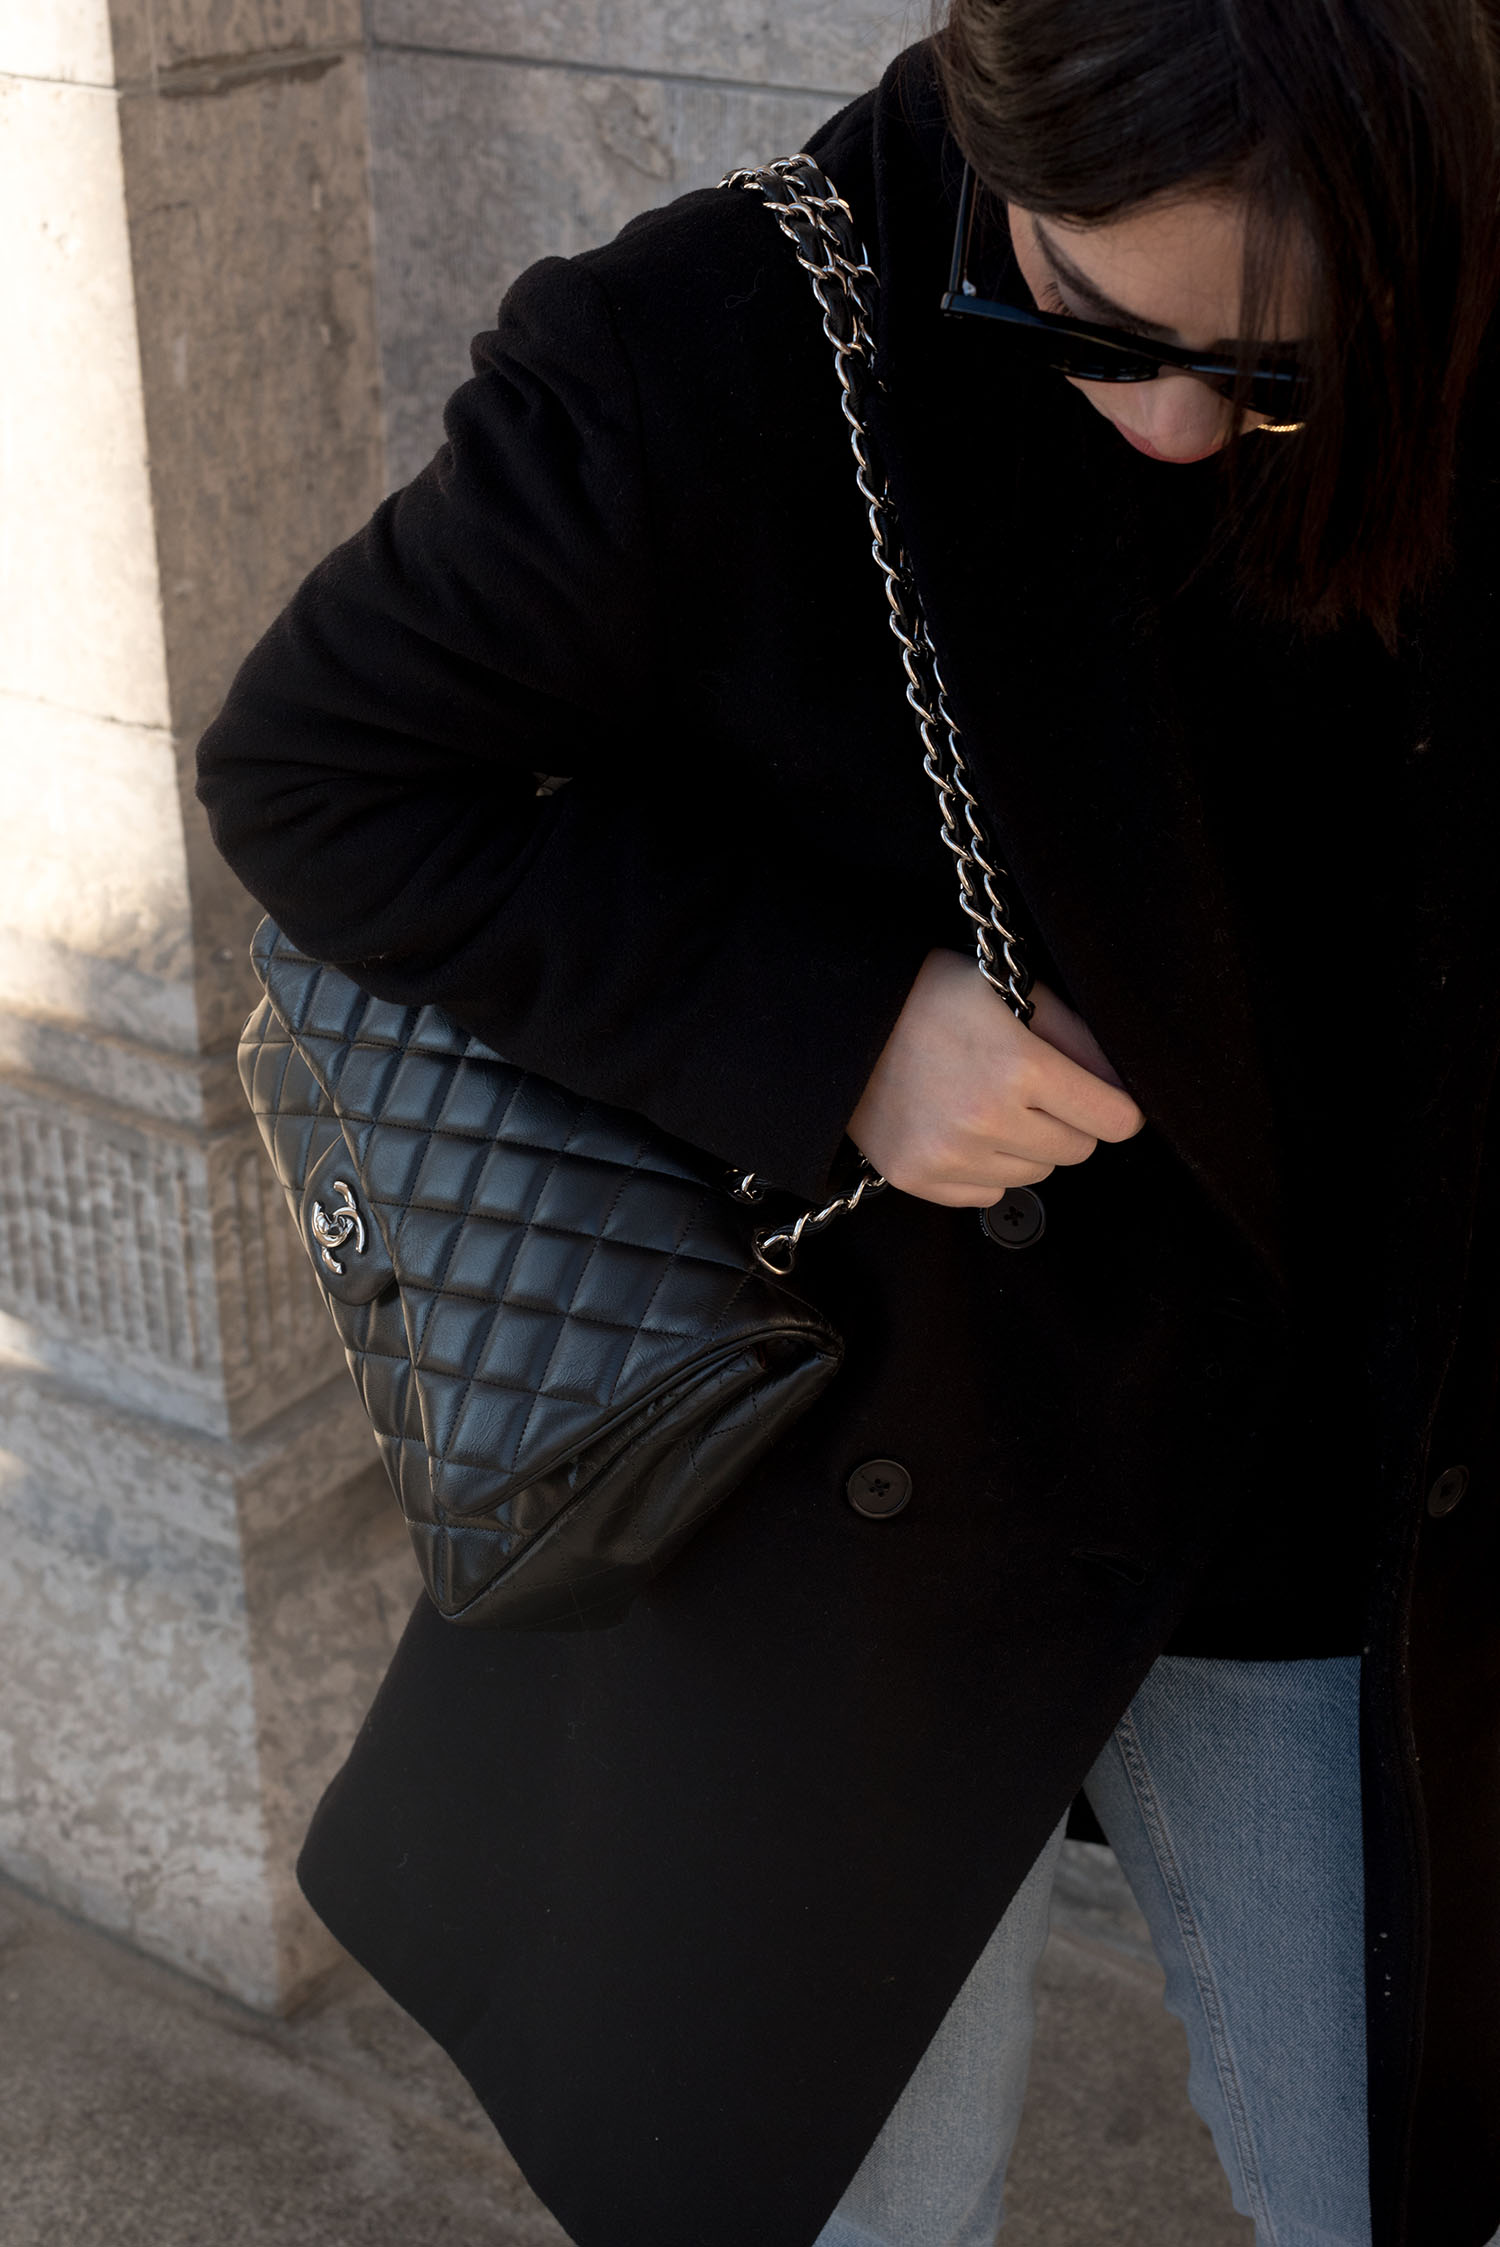 Coco & Vera - Zara jeans, Wilfred coat, Chanel handbag